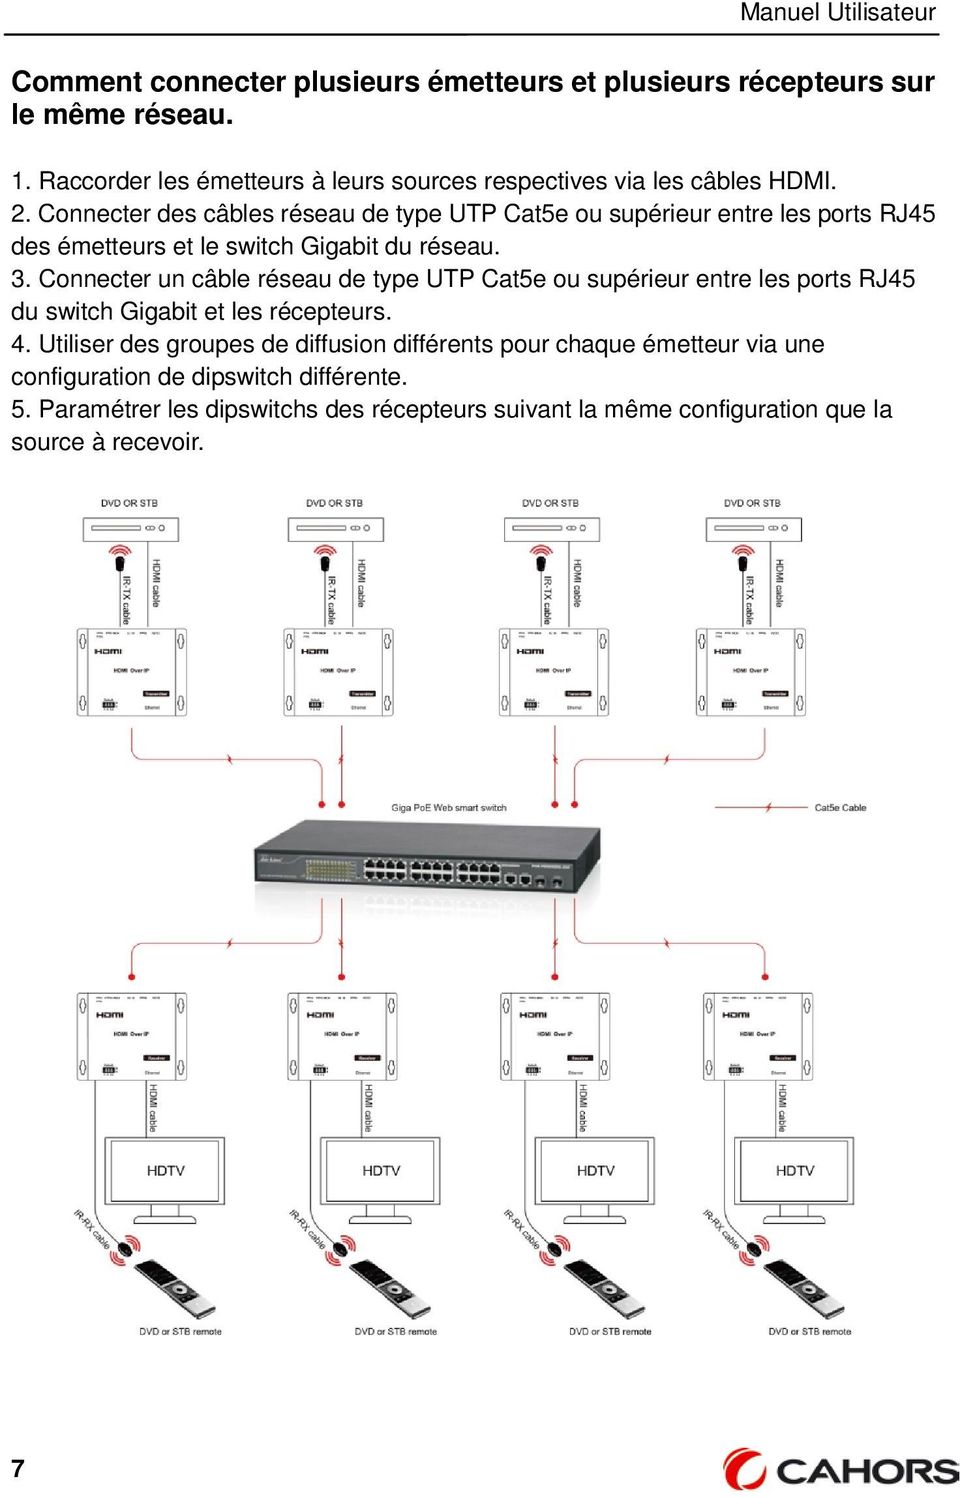 Connecter des câbles réseau de type UTP Cat5e ou supérieur entre les ports RJ45 des émetteurs et le switch Gigabit du réseau. 3.